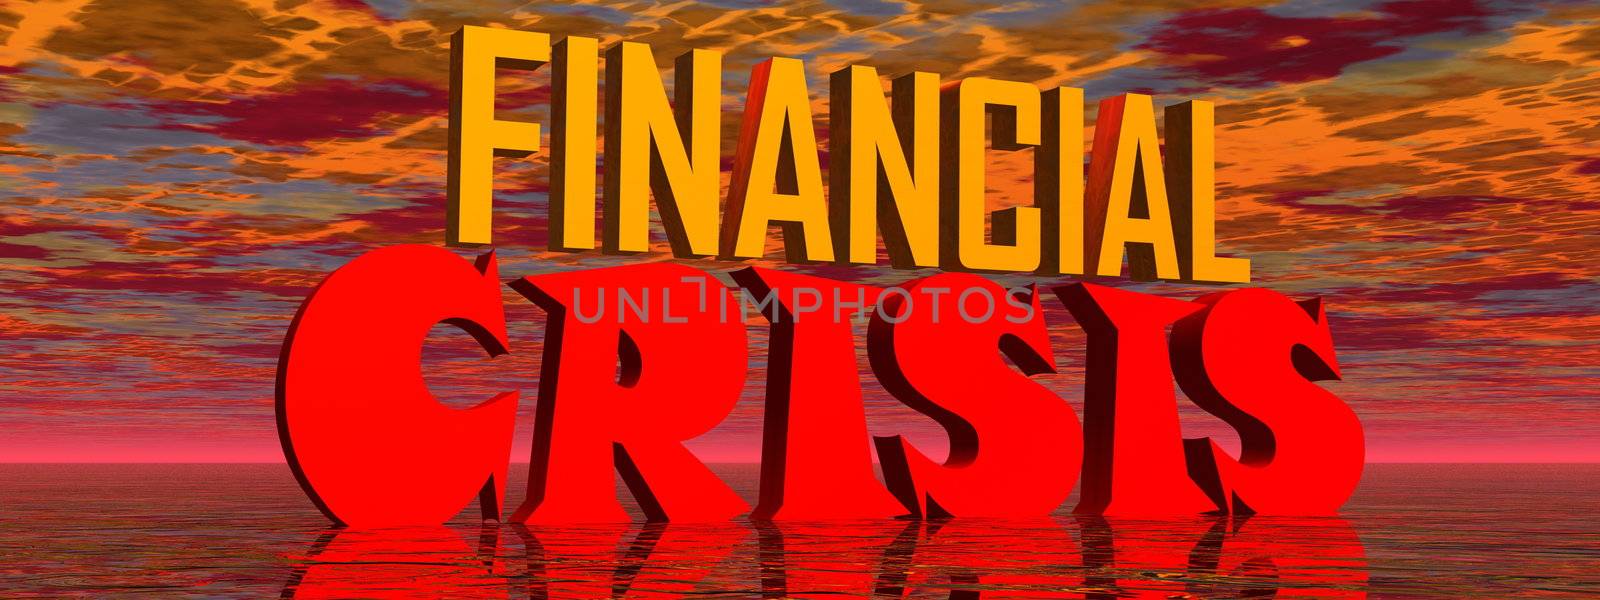 Financial crisis by Elenaphotos21